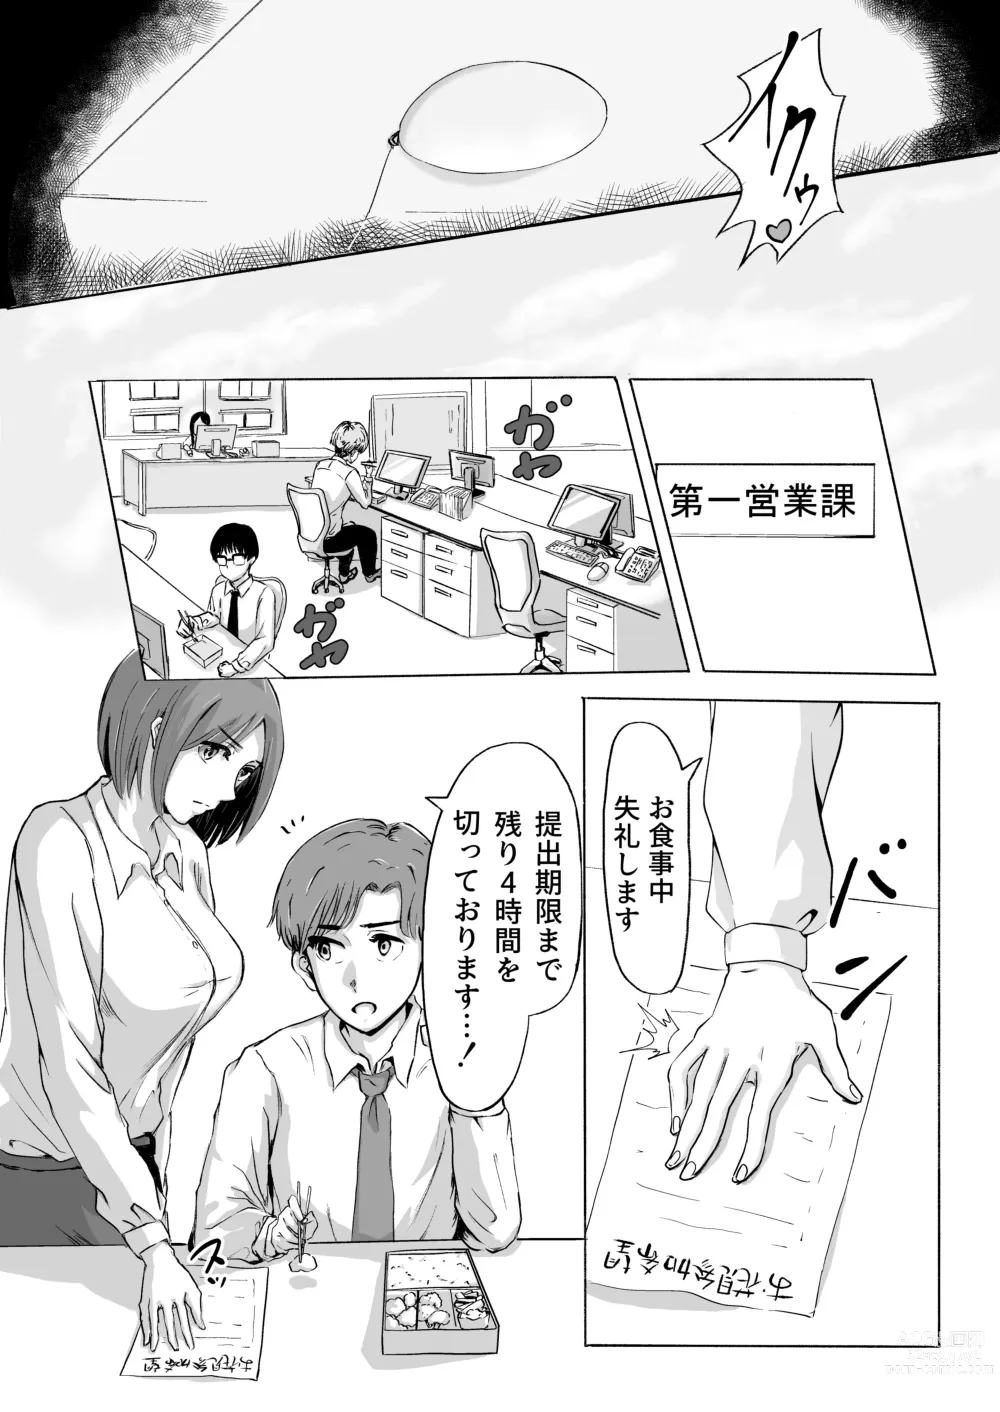 Page 4 of doujinshi Sakura no Hana Chiru Koro